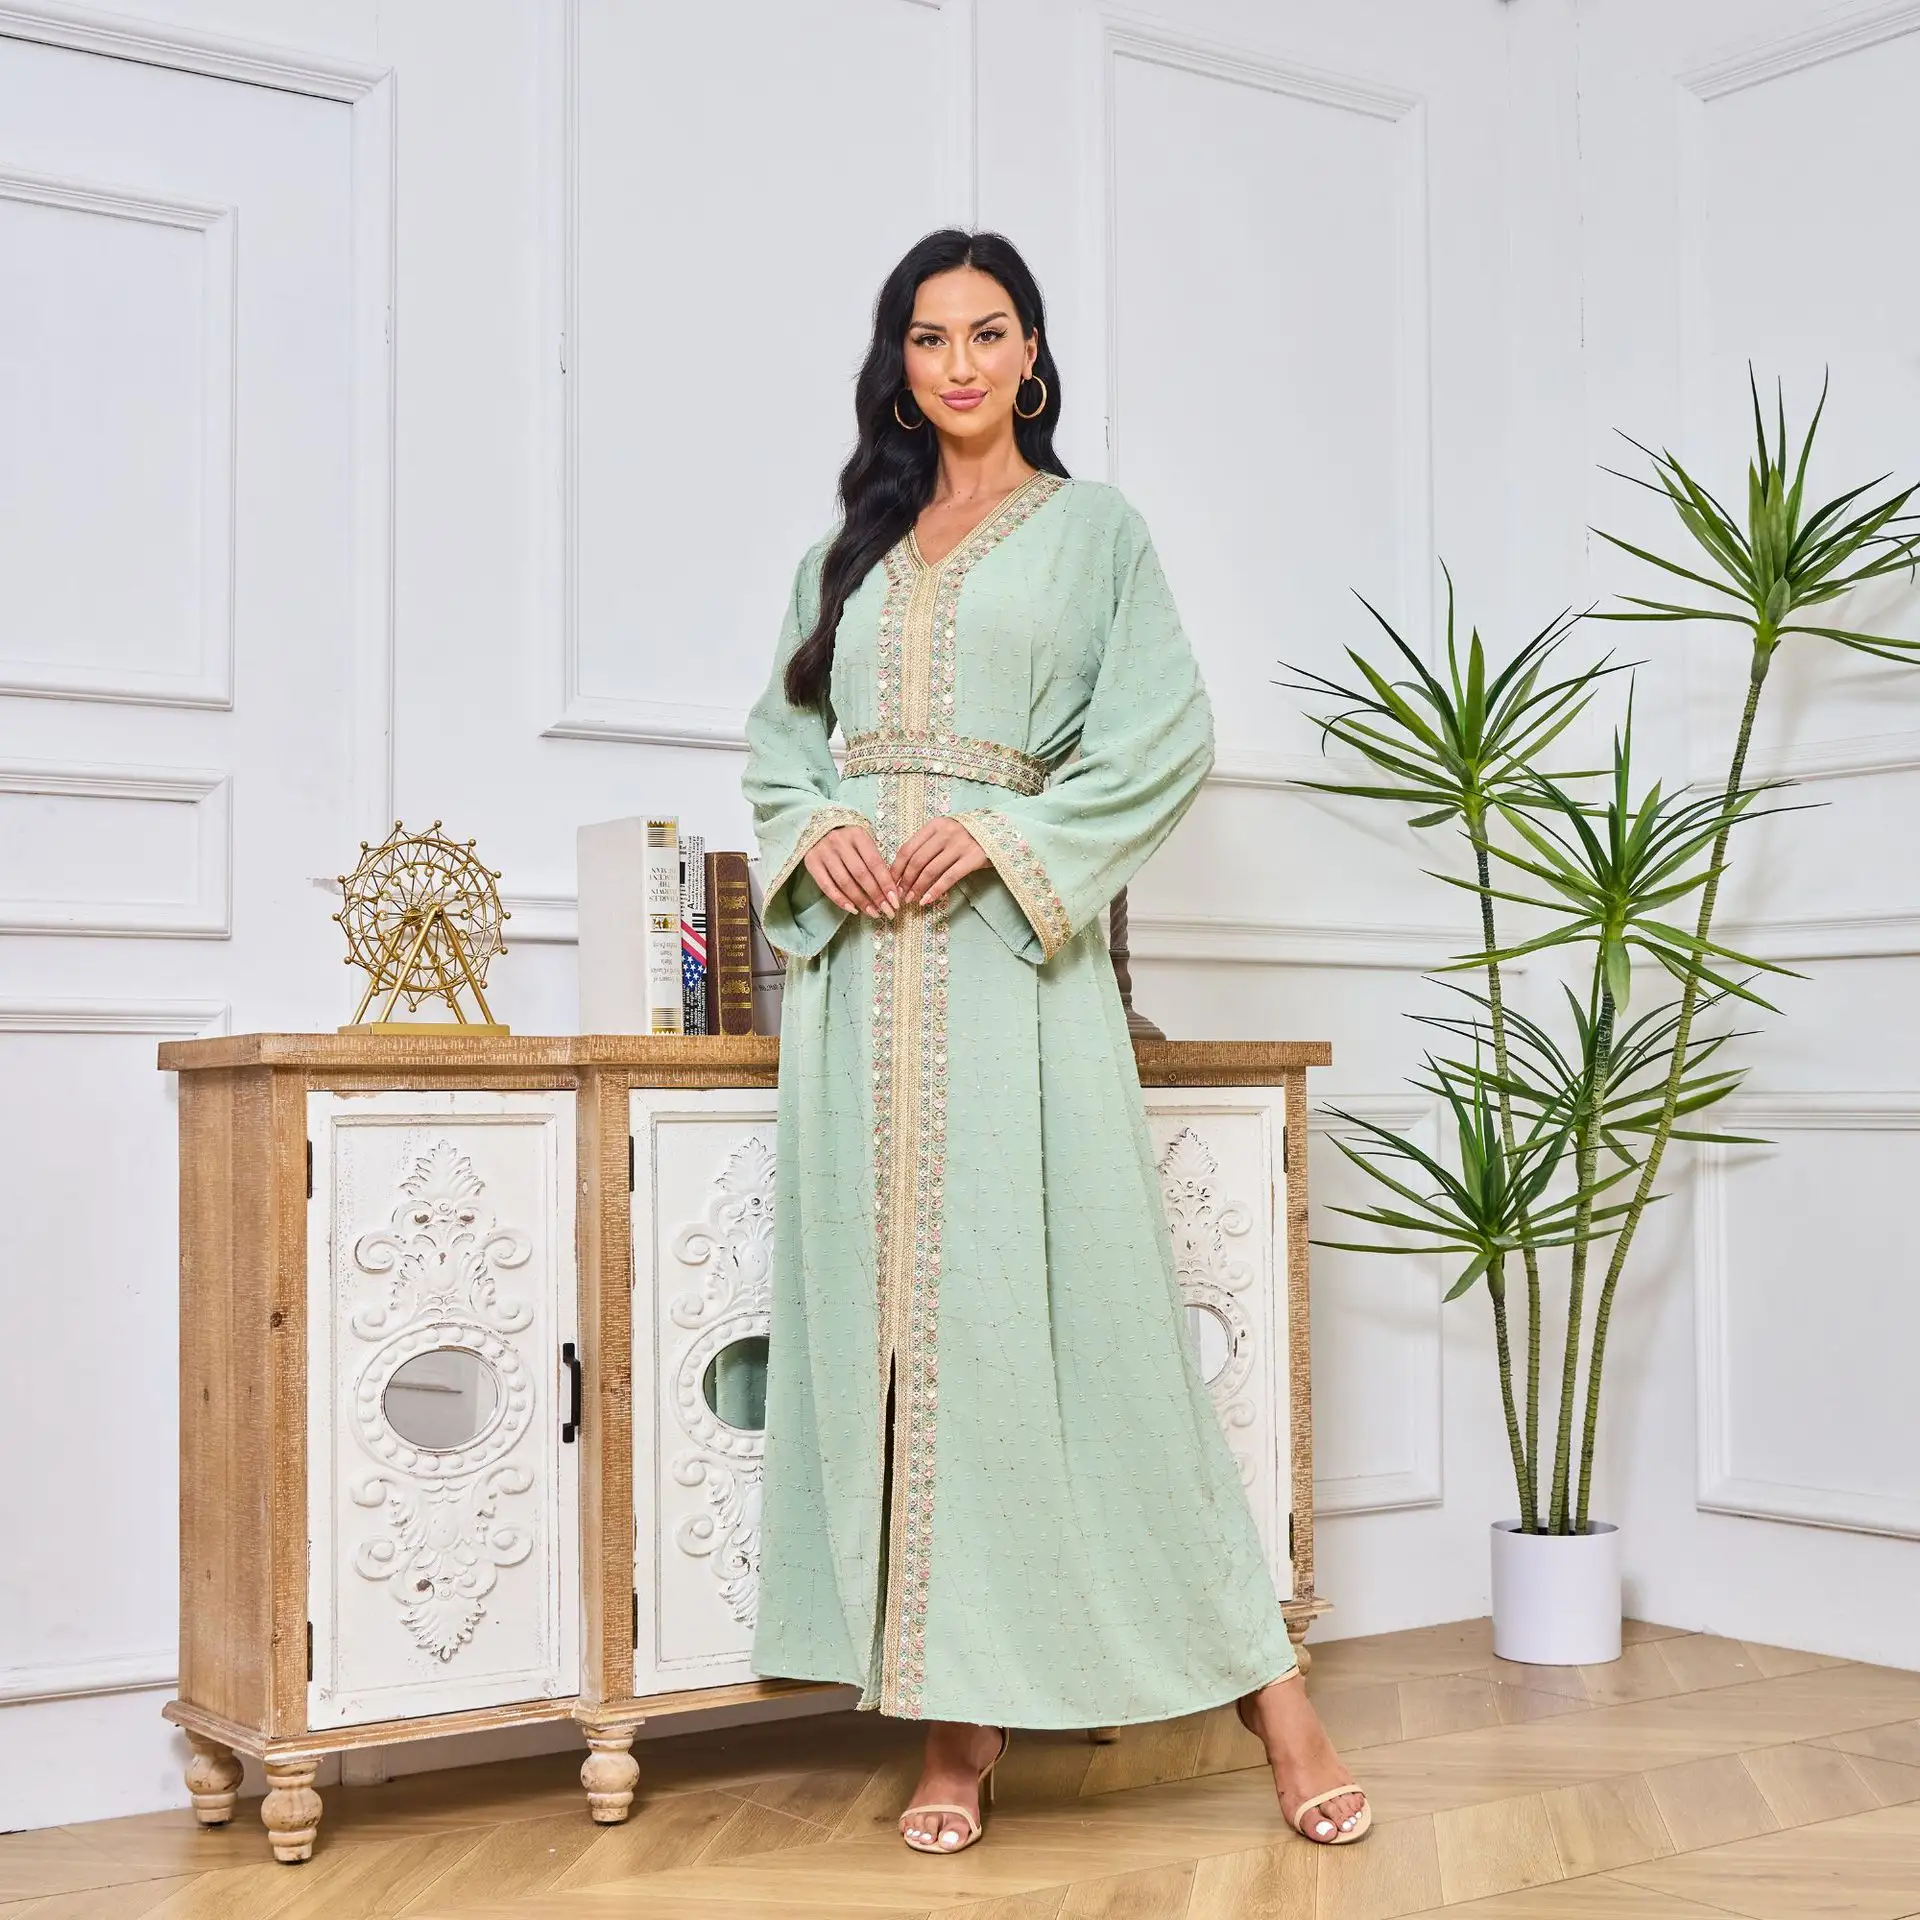 अबाया जिलब महिला रेट्रो जातीय लंबी आस्तीन के कॉलर शाम की पोशाक मोरोकन काफ्टन ने पारंपरिक मुस्लिम कपड़ों की प्रोम